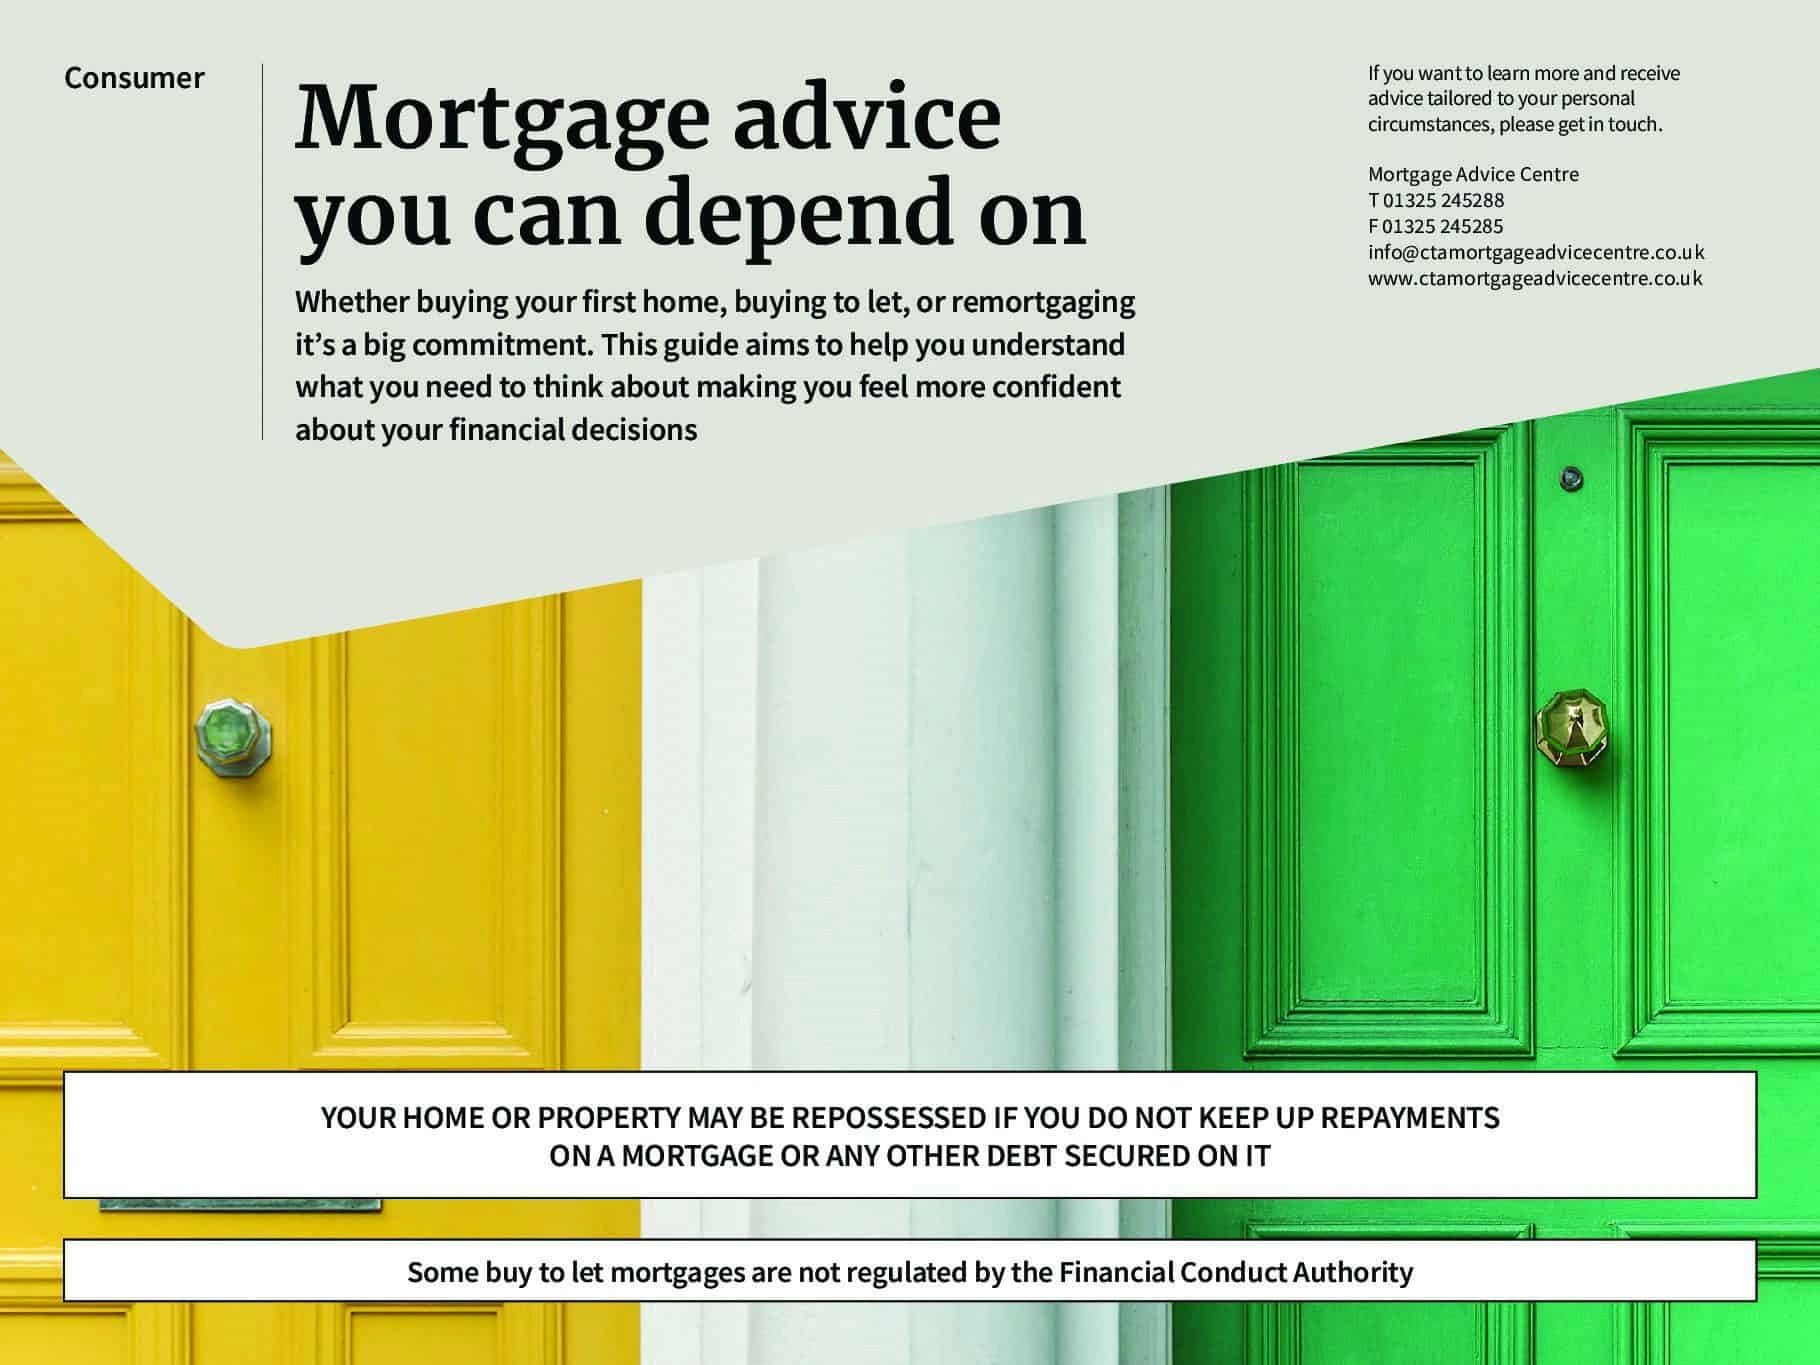 Mortgage-Advice-Guide-Consumer-pdf-1